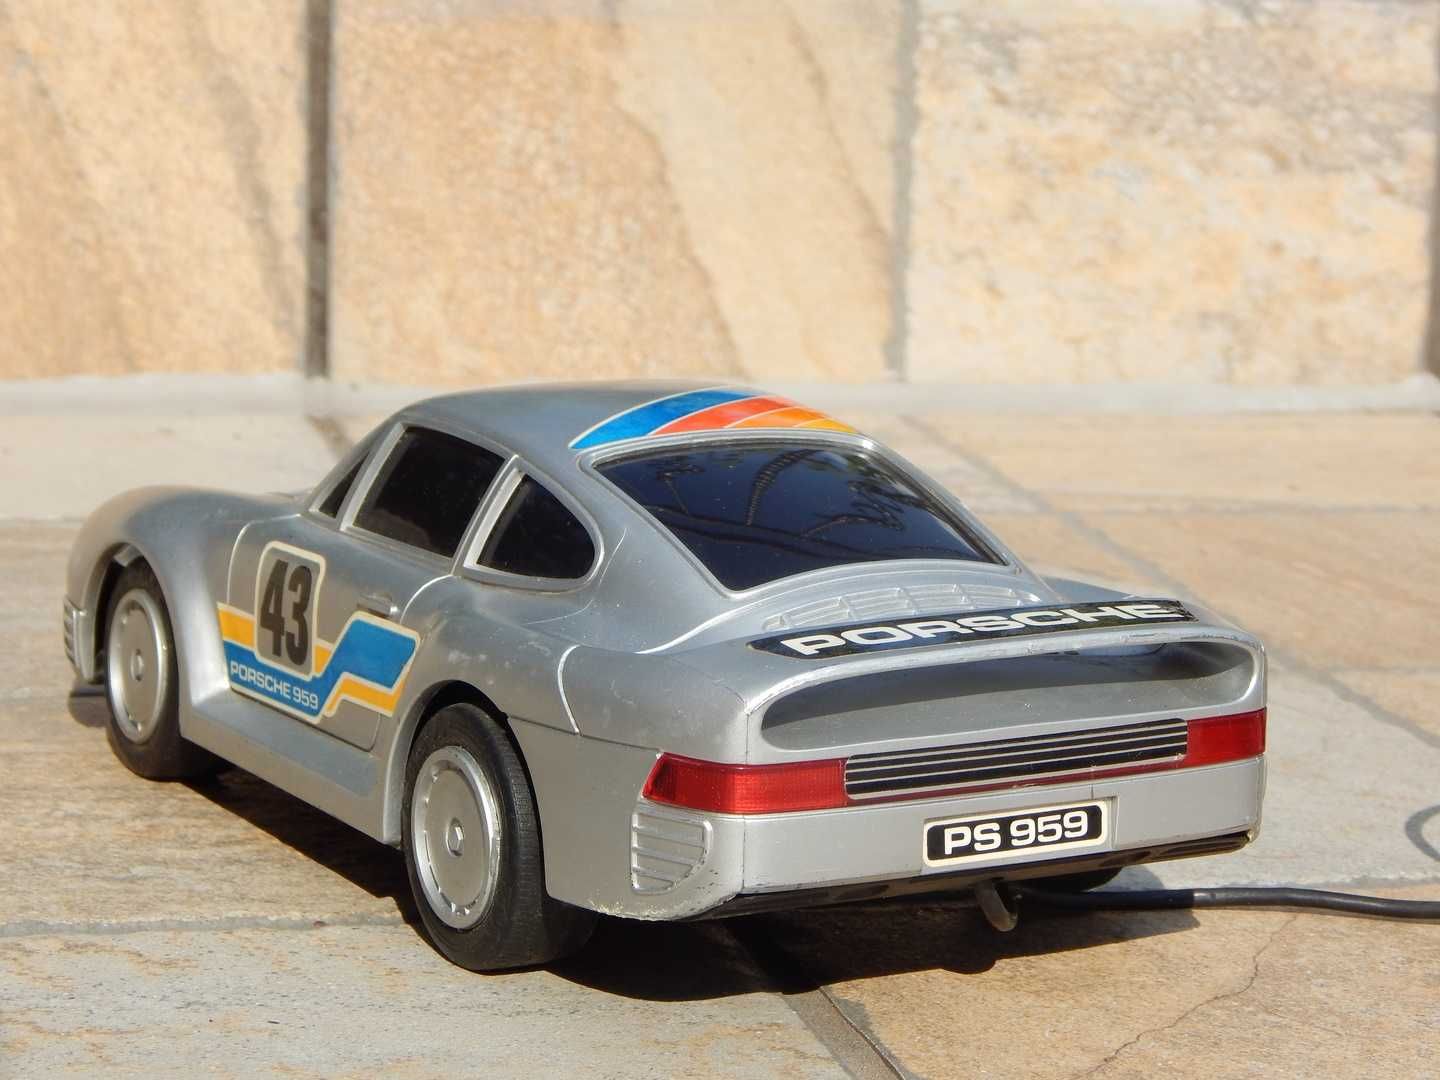 Macheta jucarie Porsche 959 1986 cu firocomanda sc 1:18 25 cm